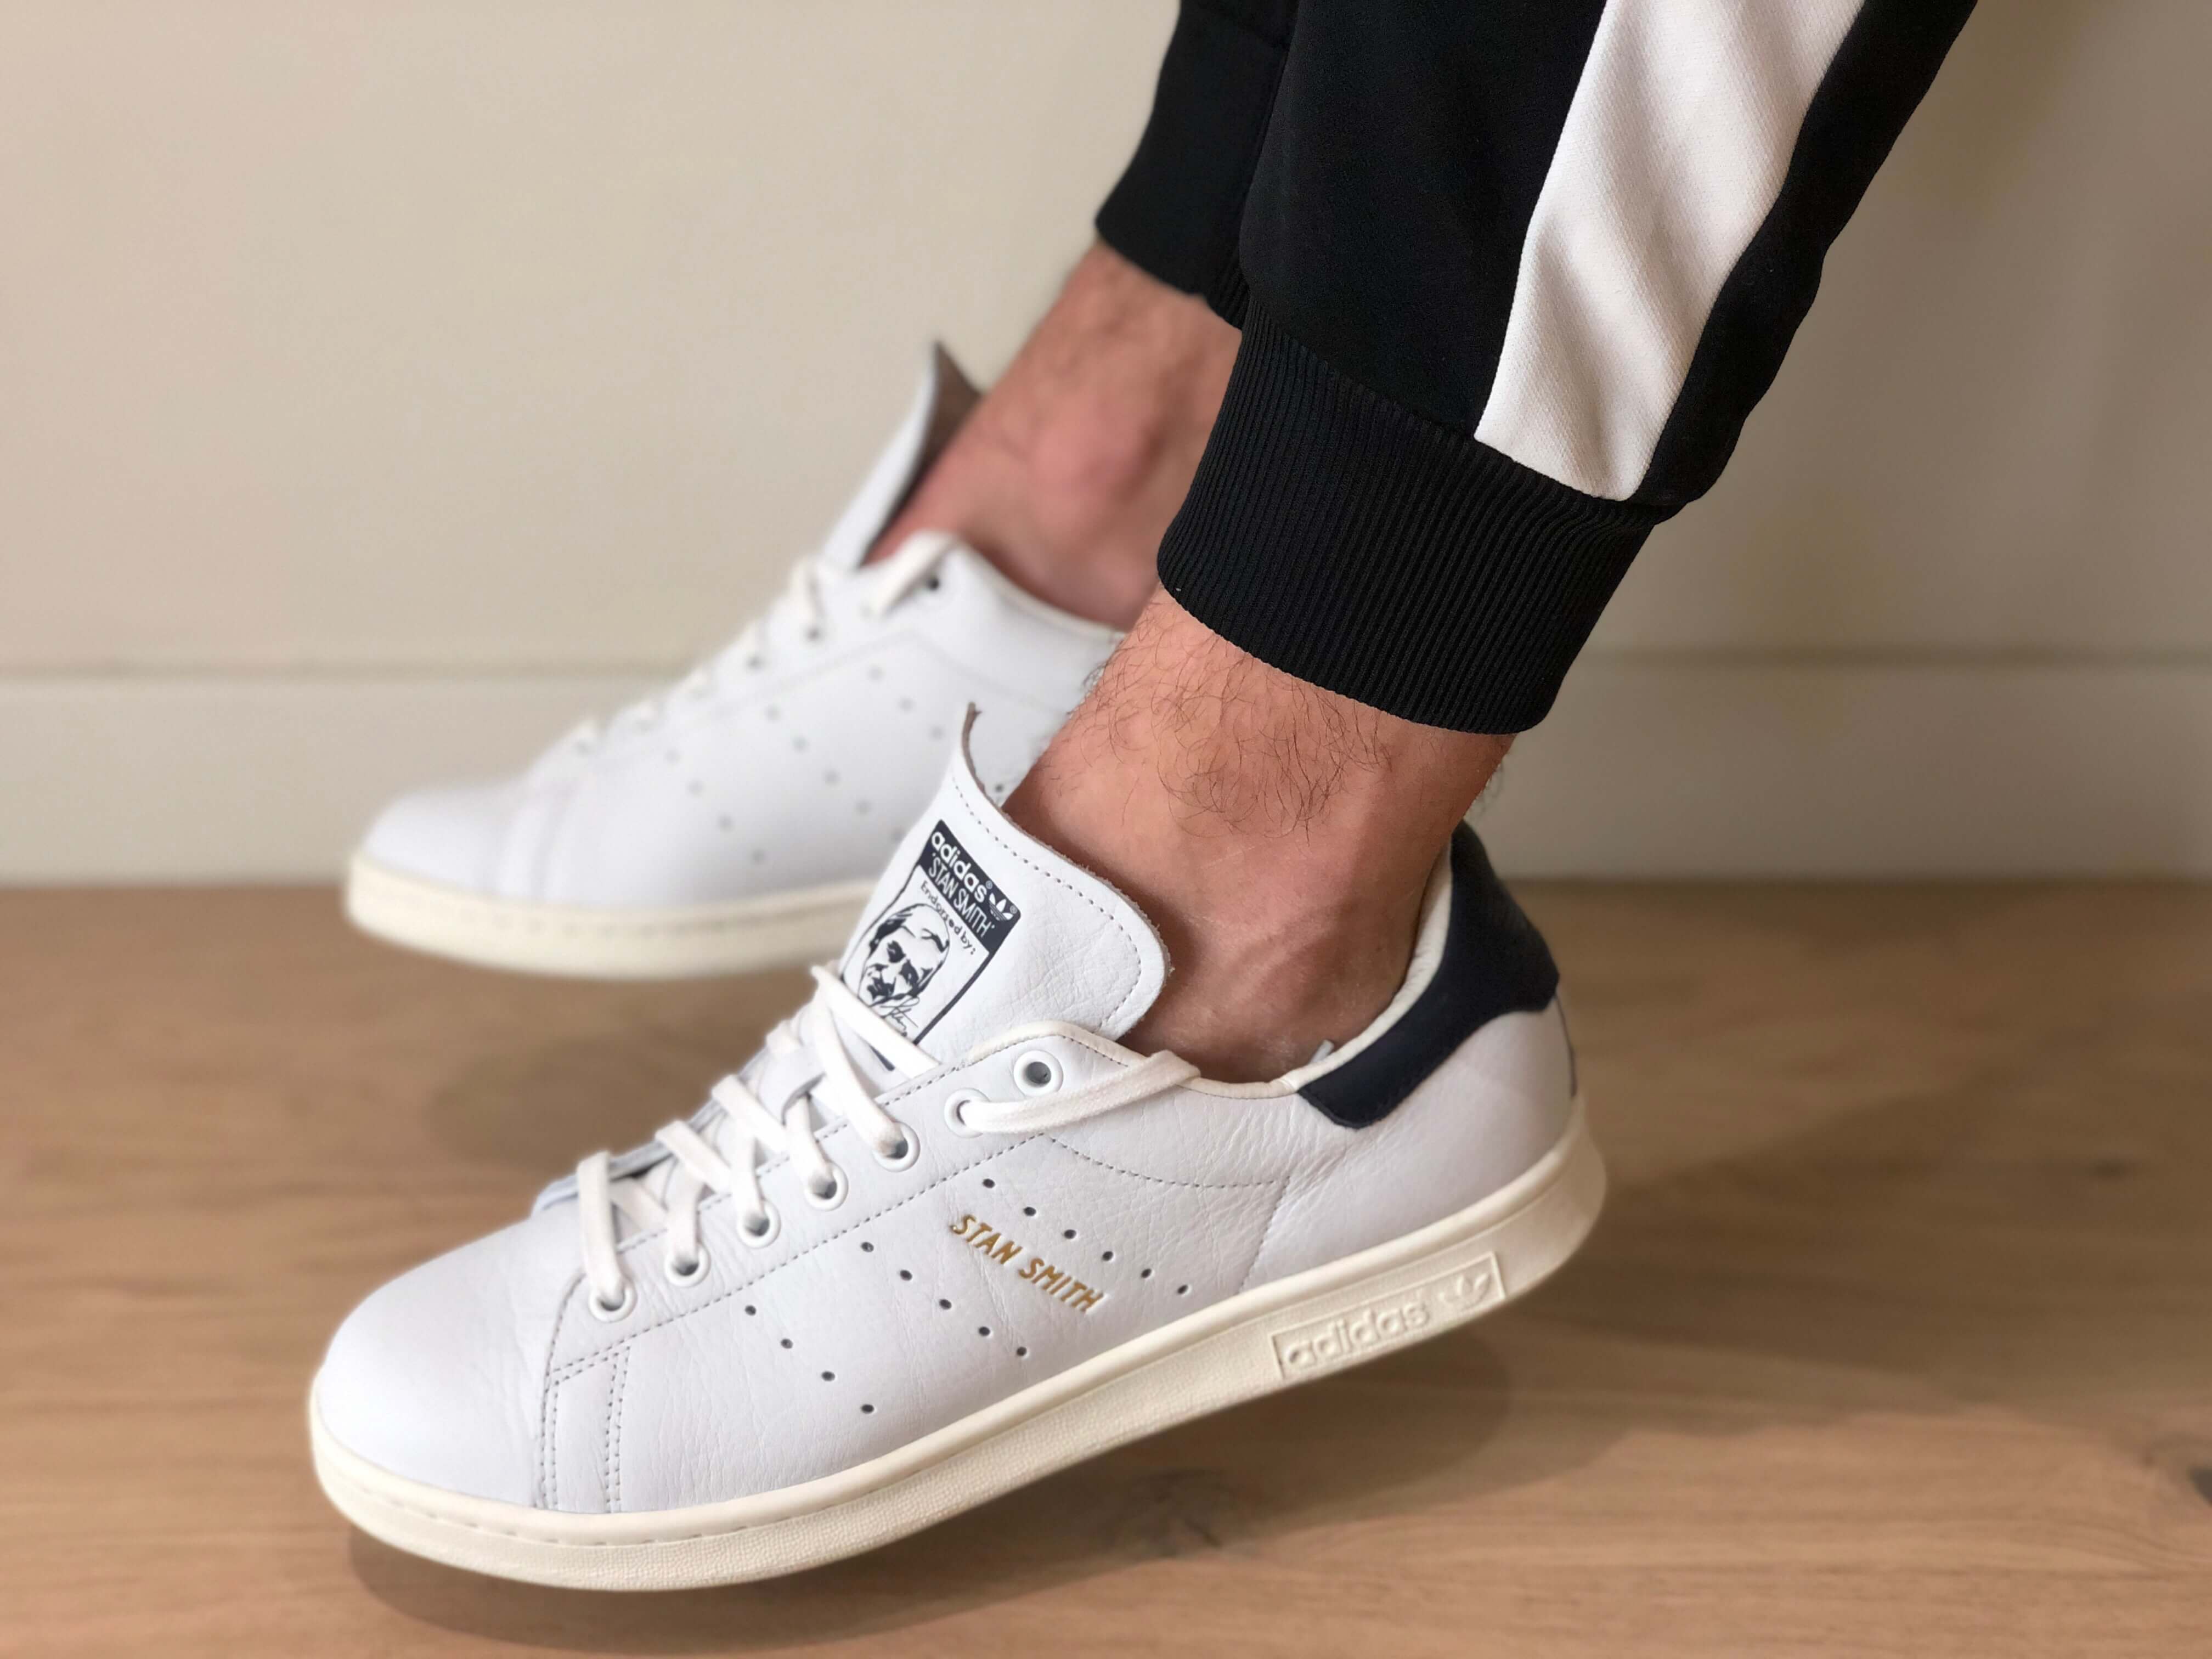 Himself designer disease REVIEW! Adidas STAN SMITH ¡ Un clásico de 2020! | zapatillasysneakers.com